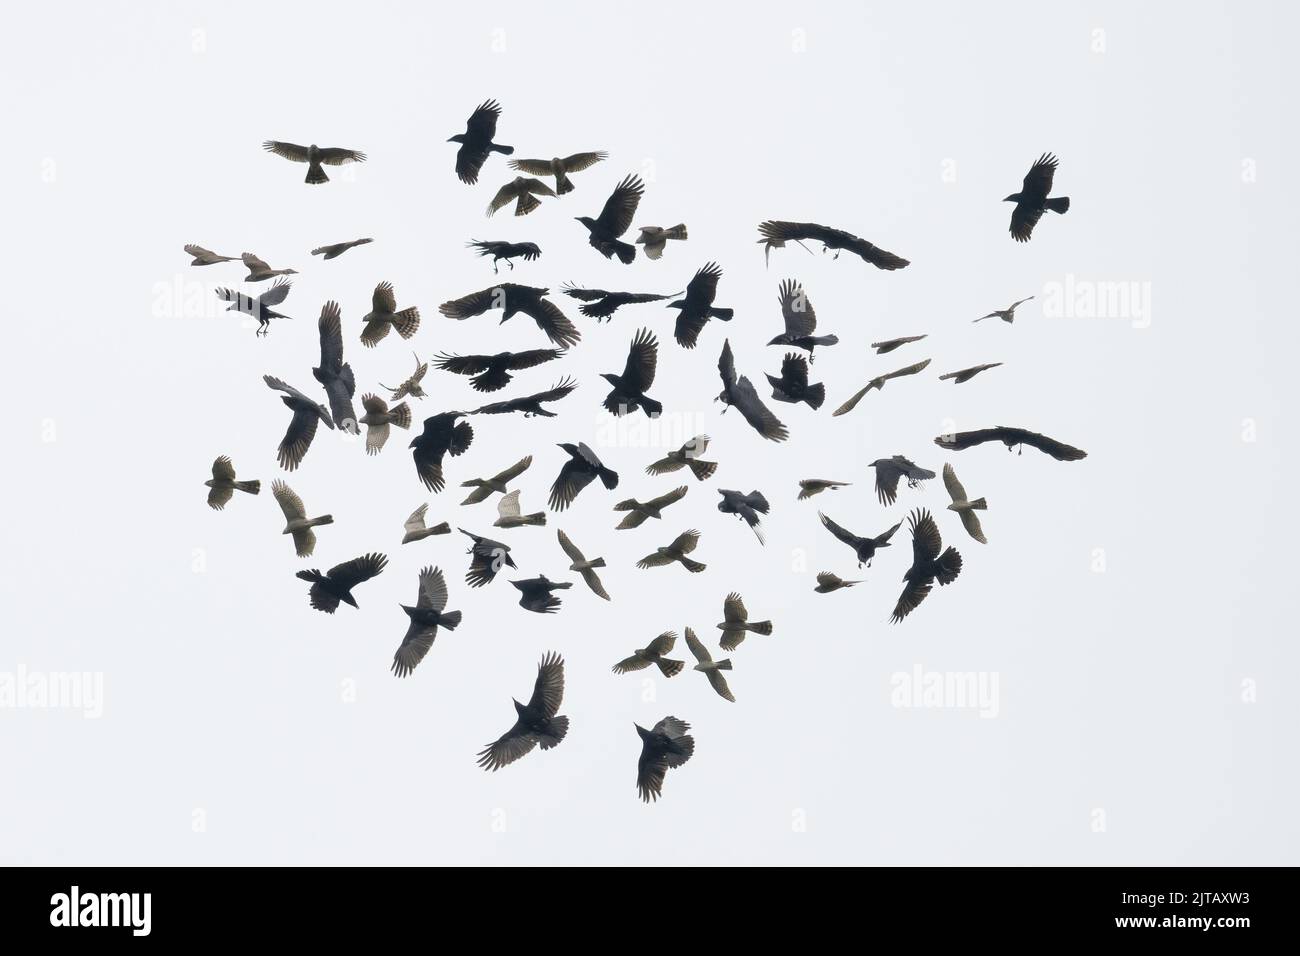 Kreatives Bild von mehreren Aufnahmen einer Vogelzerreissung - eine Krähe, die einen Sperber abjagt, Accipiter nisus, England, Großbritannien Stockfoto